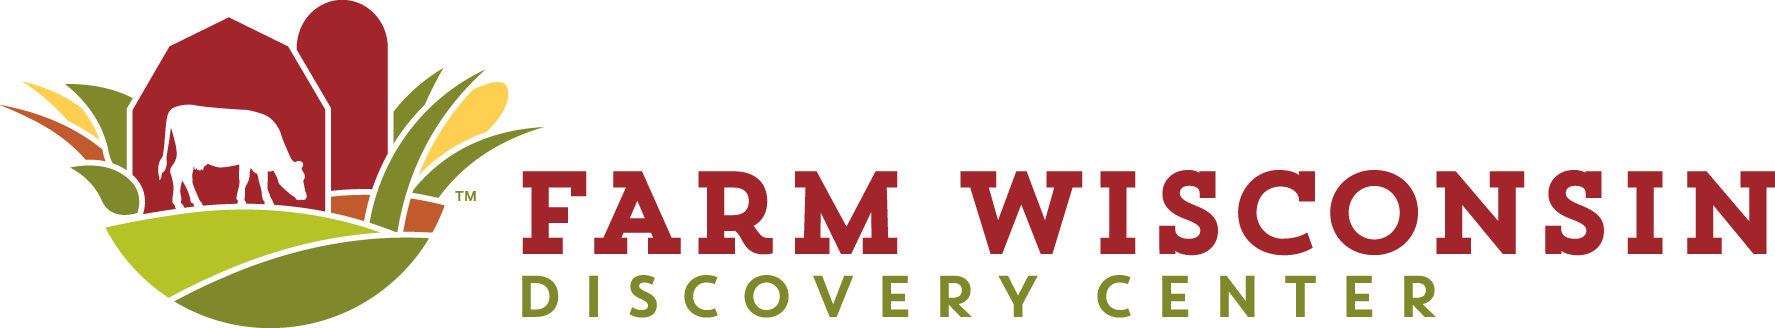 Farm Wisconsin Discovery Ceneter logo horizontal